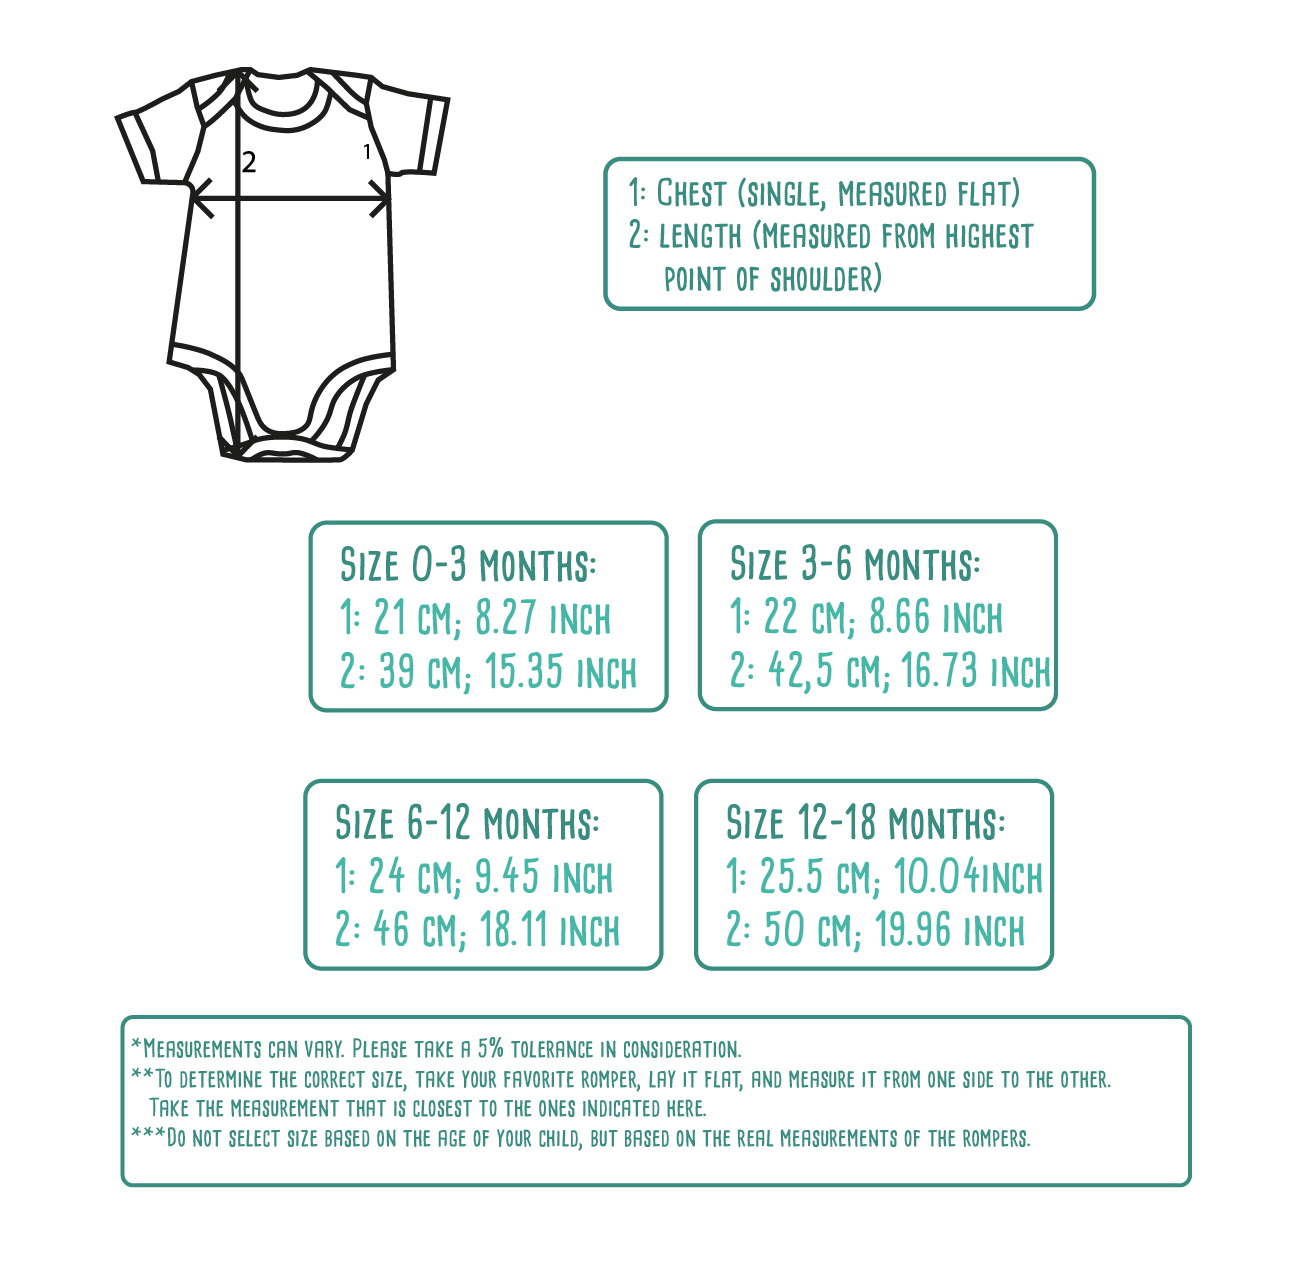 'Chic' baby shortsleeve bodysuit